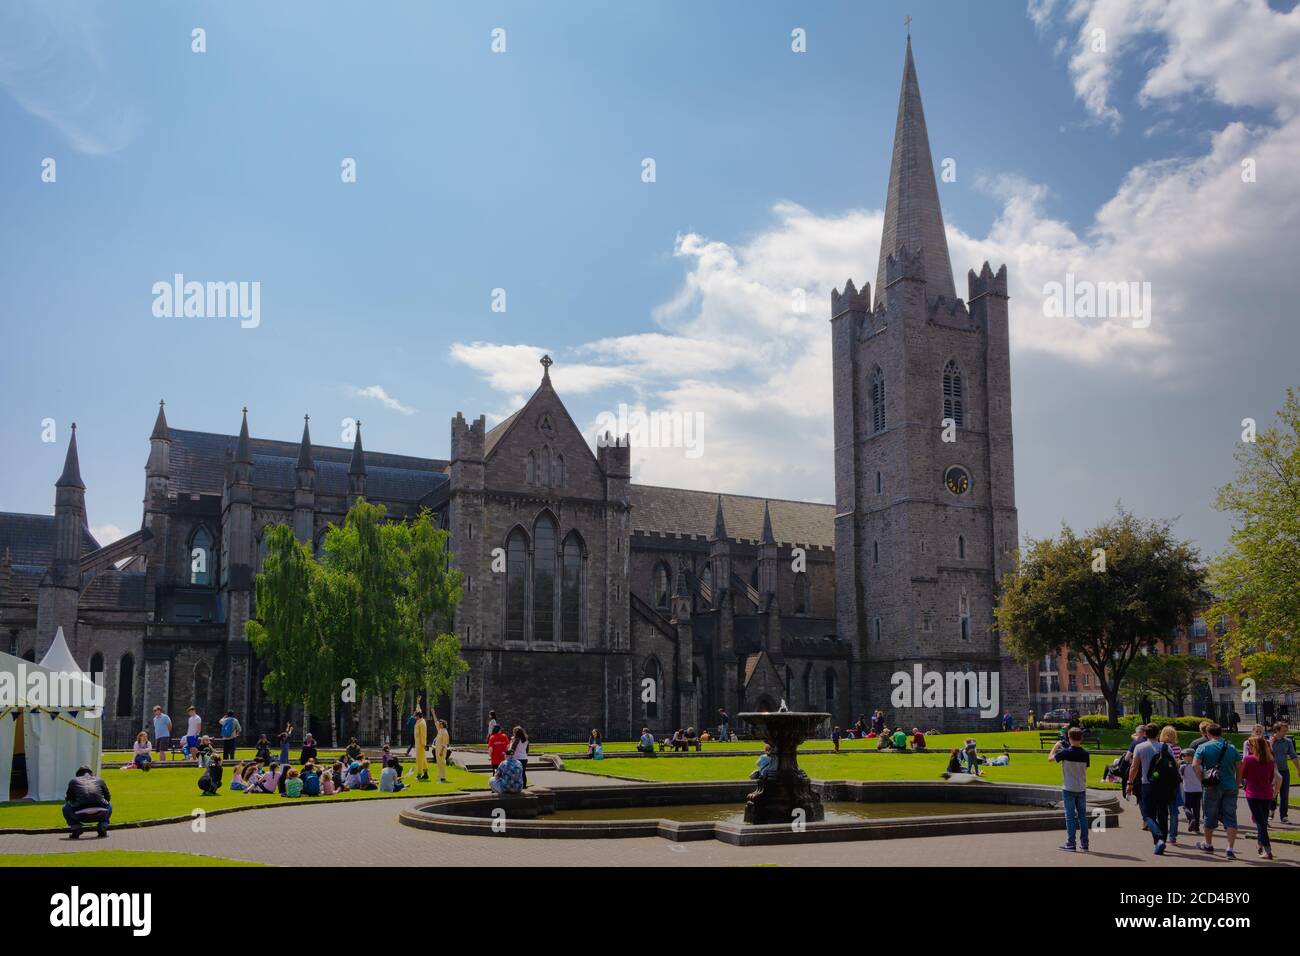 DUBLÍN, IRLANDA - Mayo 2016: Vista exterior de la Catedral de San Patricio en Dublín. Foto de stock